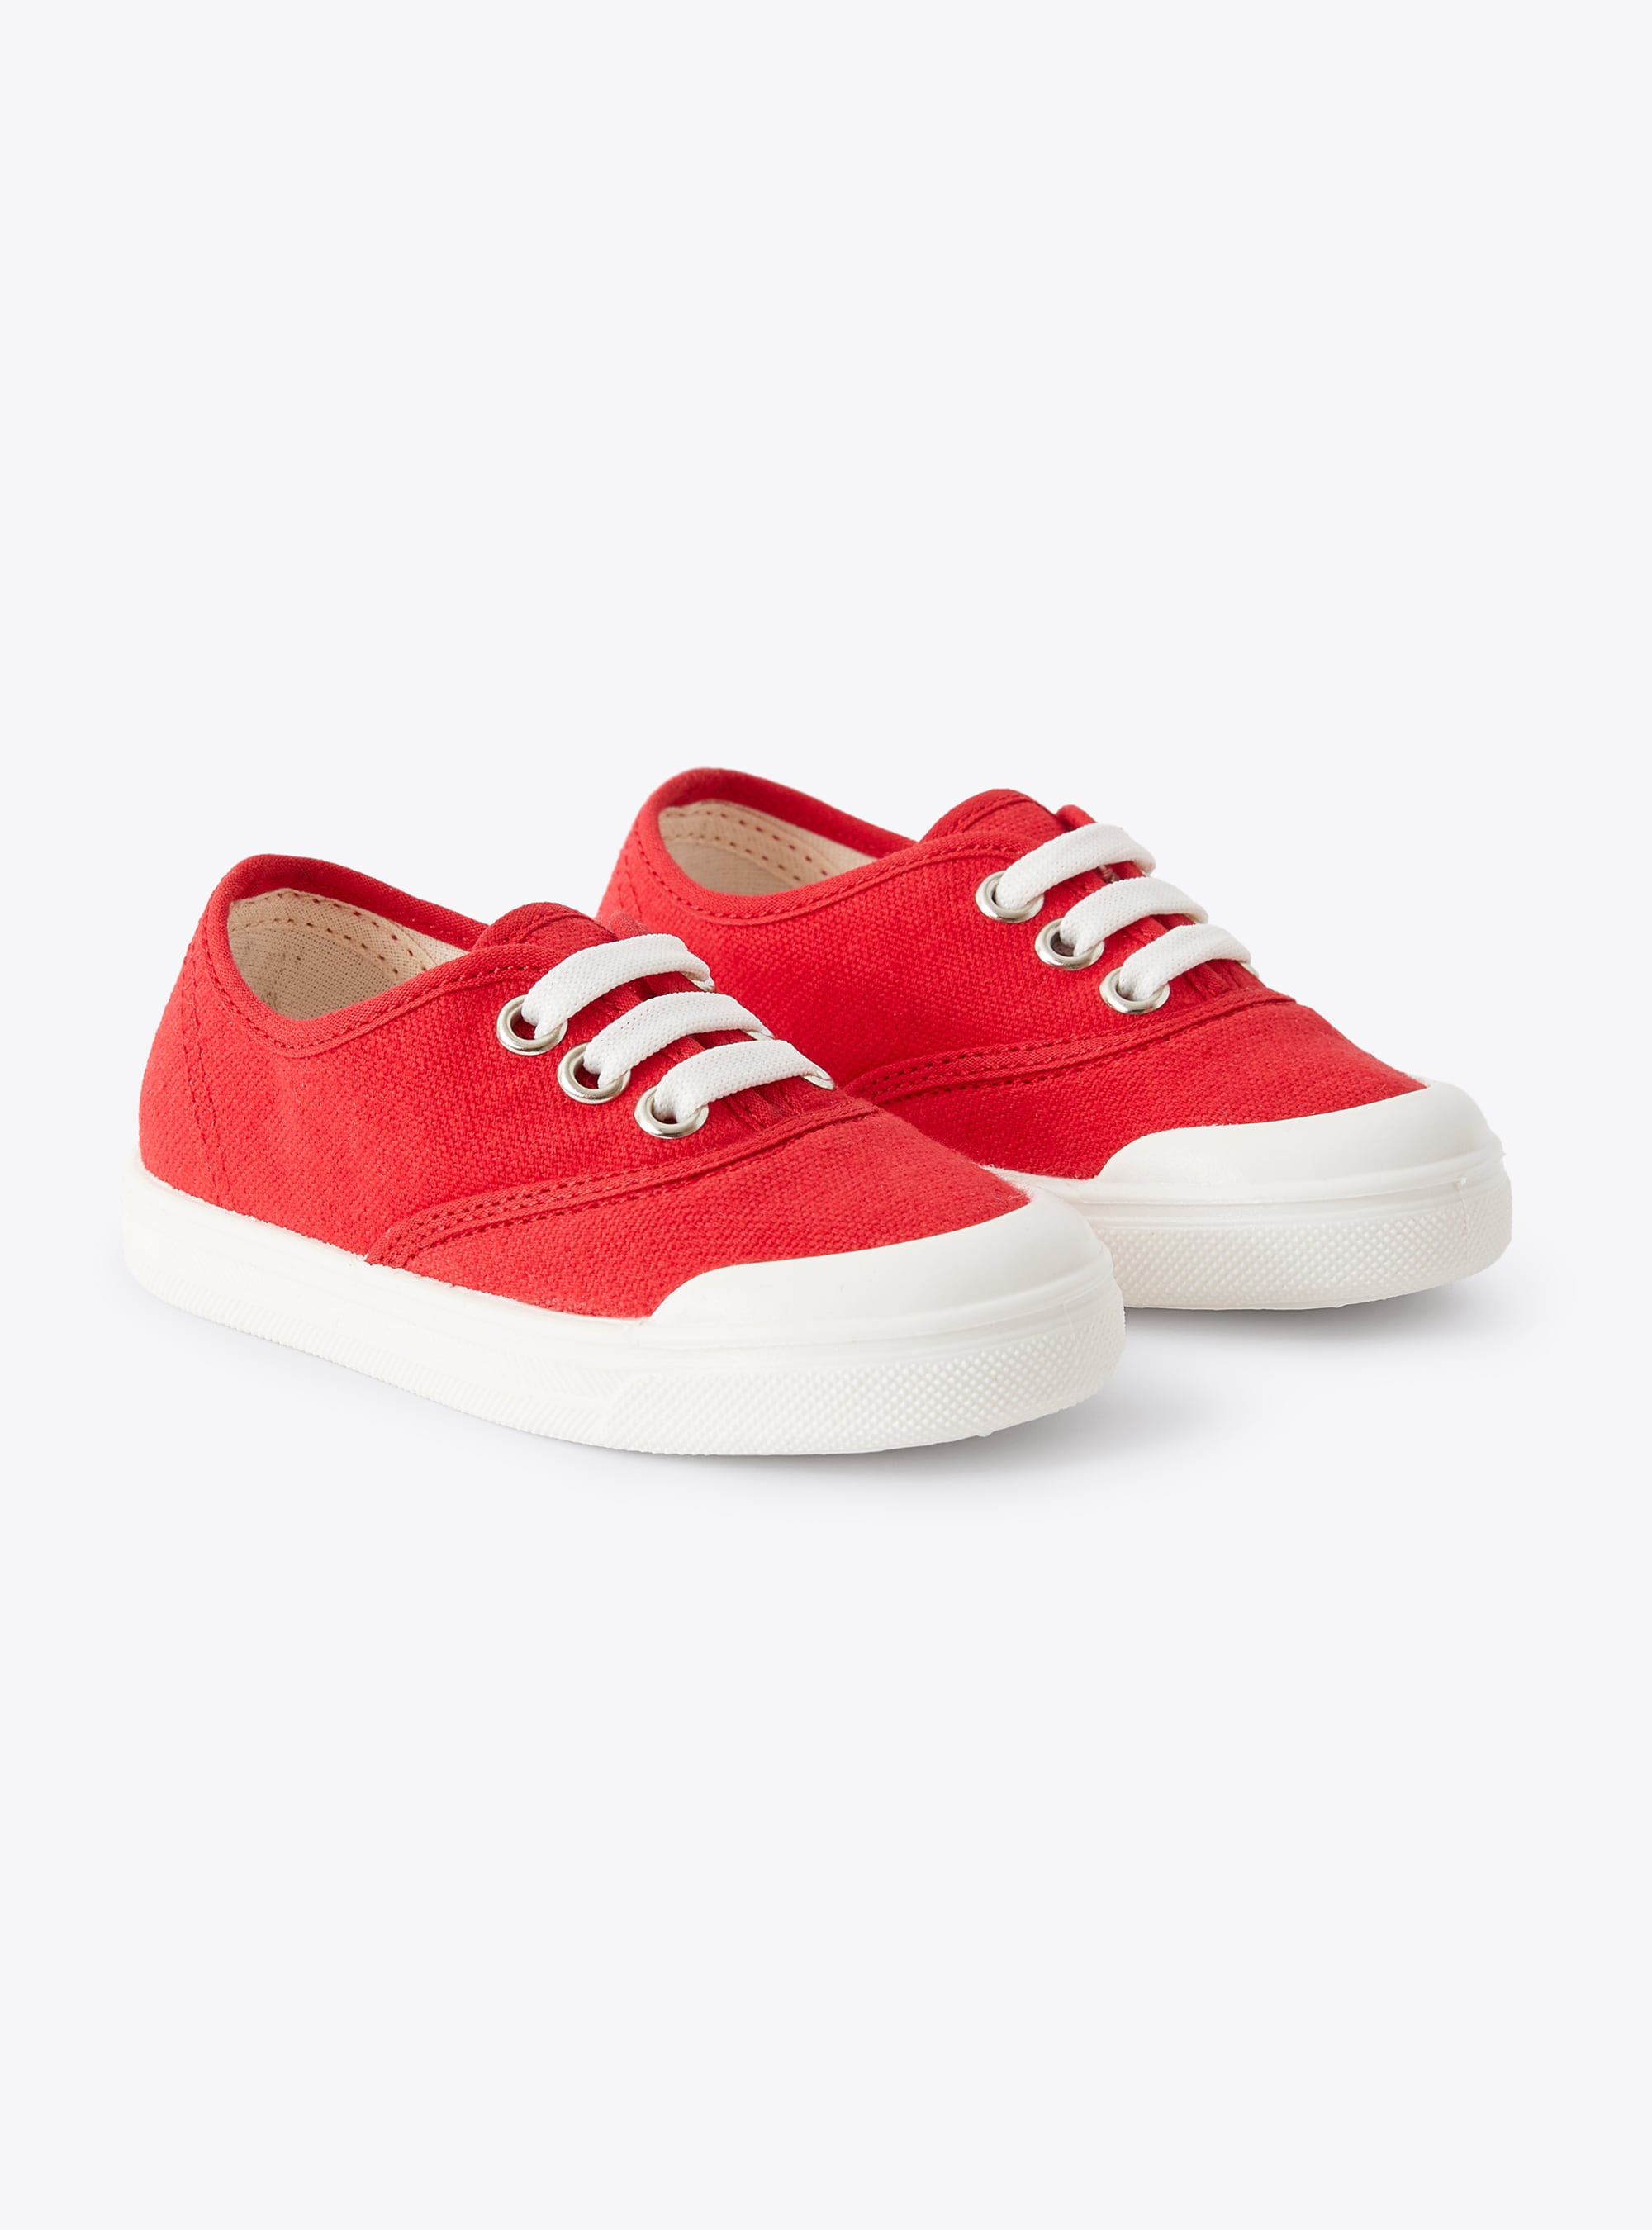 Sneakers en toile rouge avec lacets - Chaussures - Il Gufo